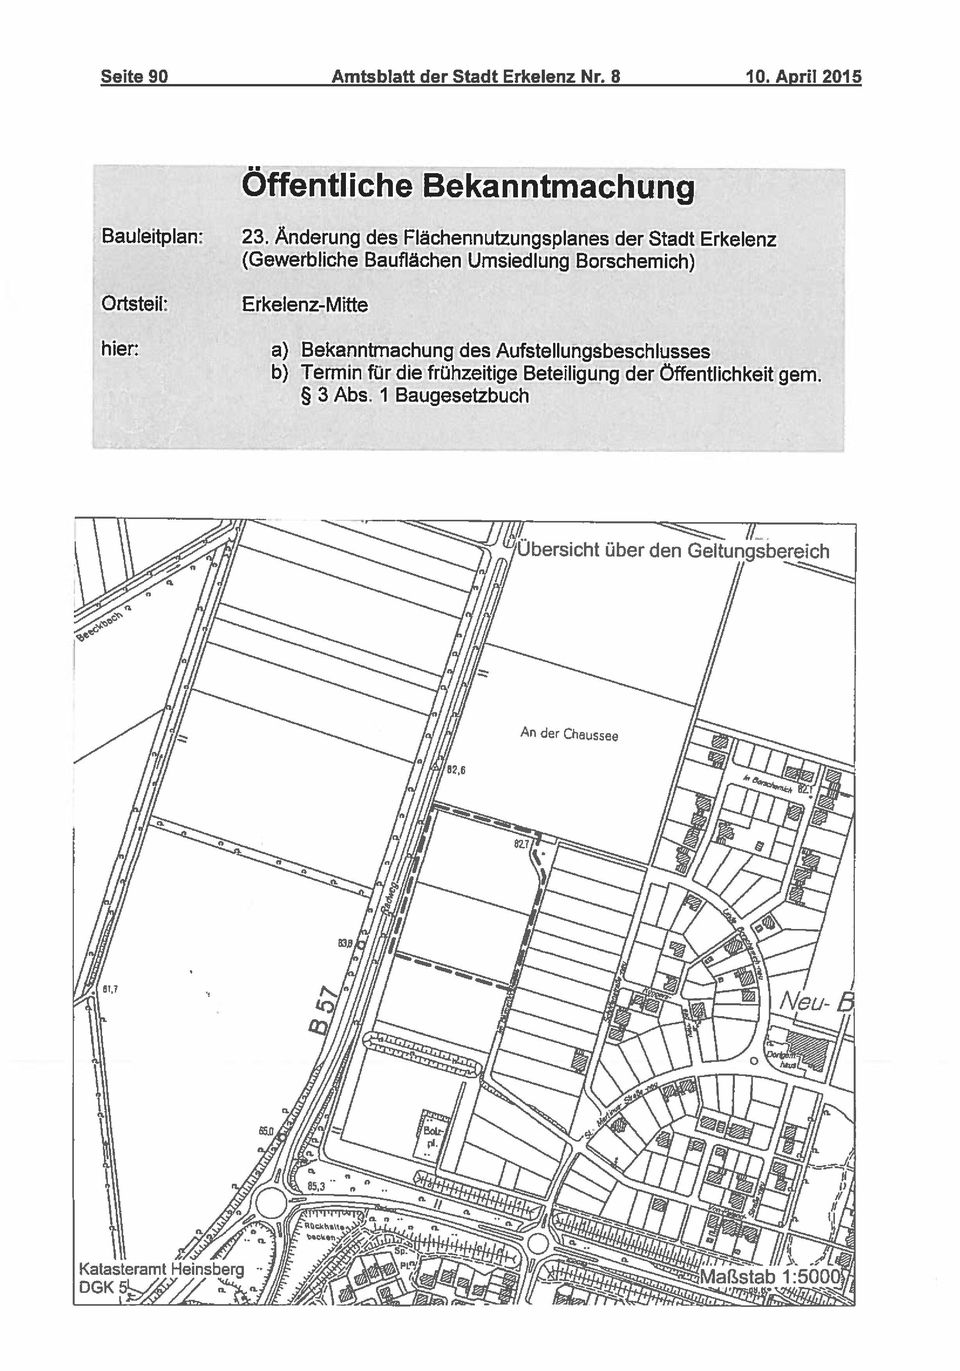 Änderung des Flächennutzungsplanes der Stadt Erkelenz (Gewerbliche Bauflächen Umsiedlung